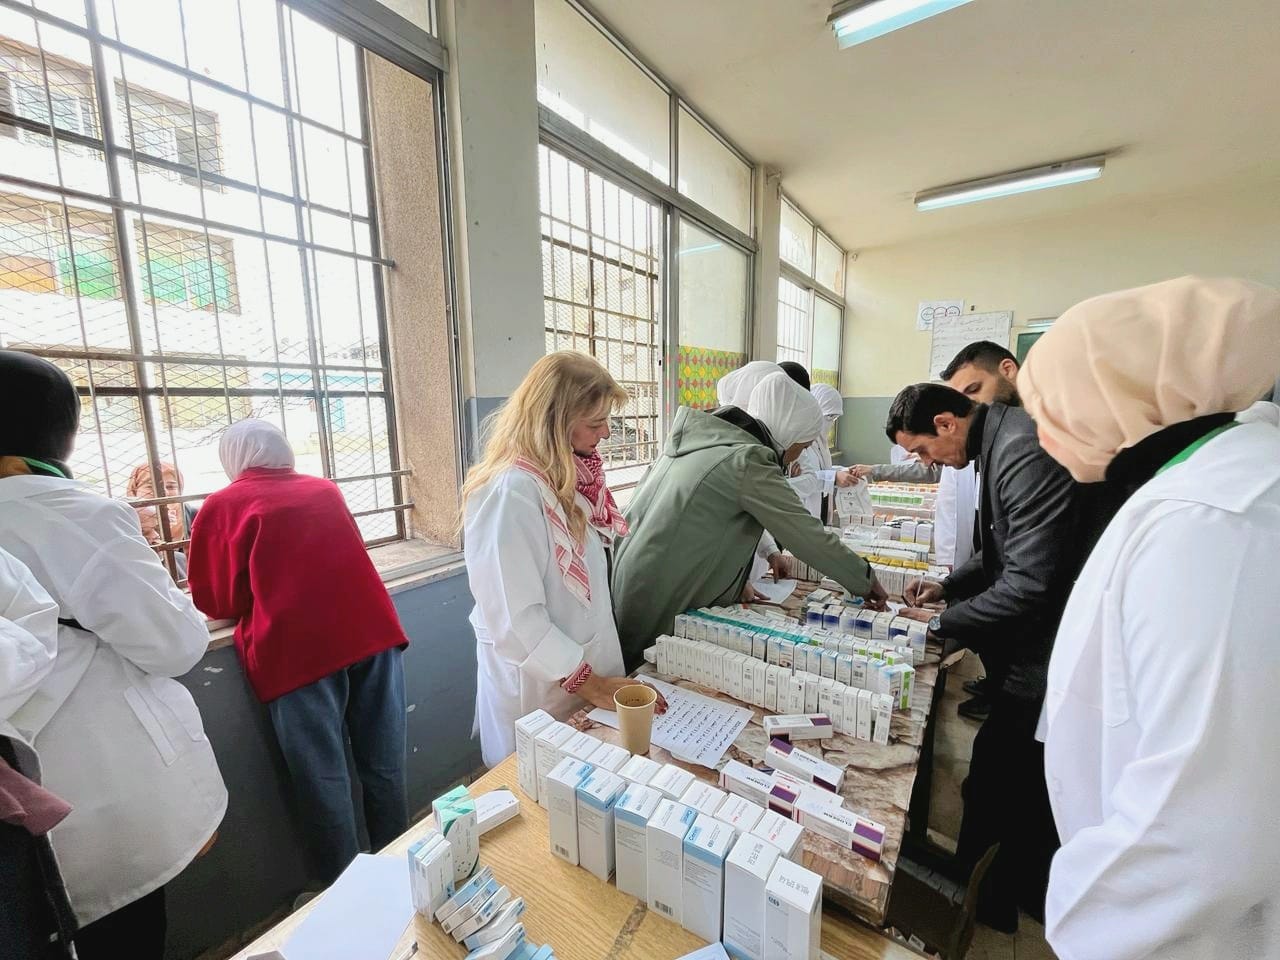 بنك الدواء وصيدلة اليرموك يُنظمان يوماً طبياً إحتفالاً باليوبيل الفضي لجلالة الملك